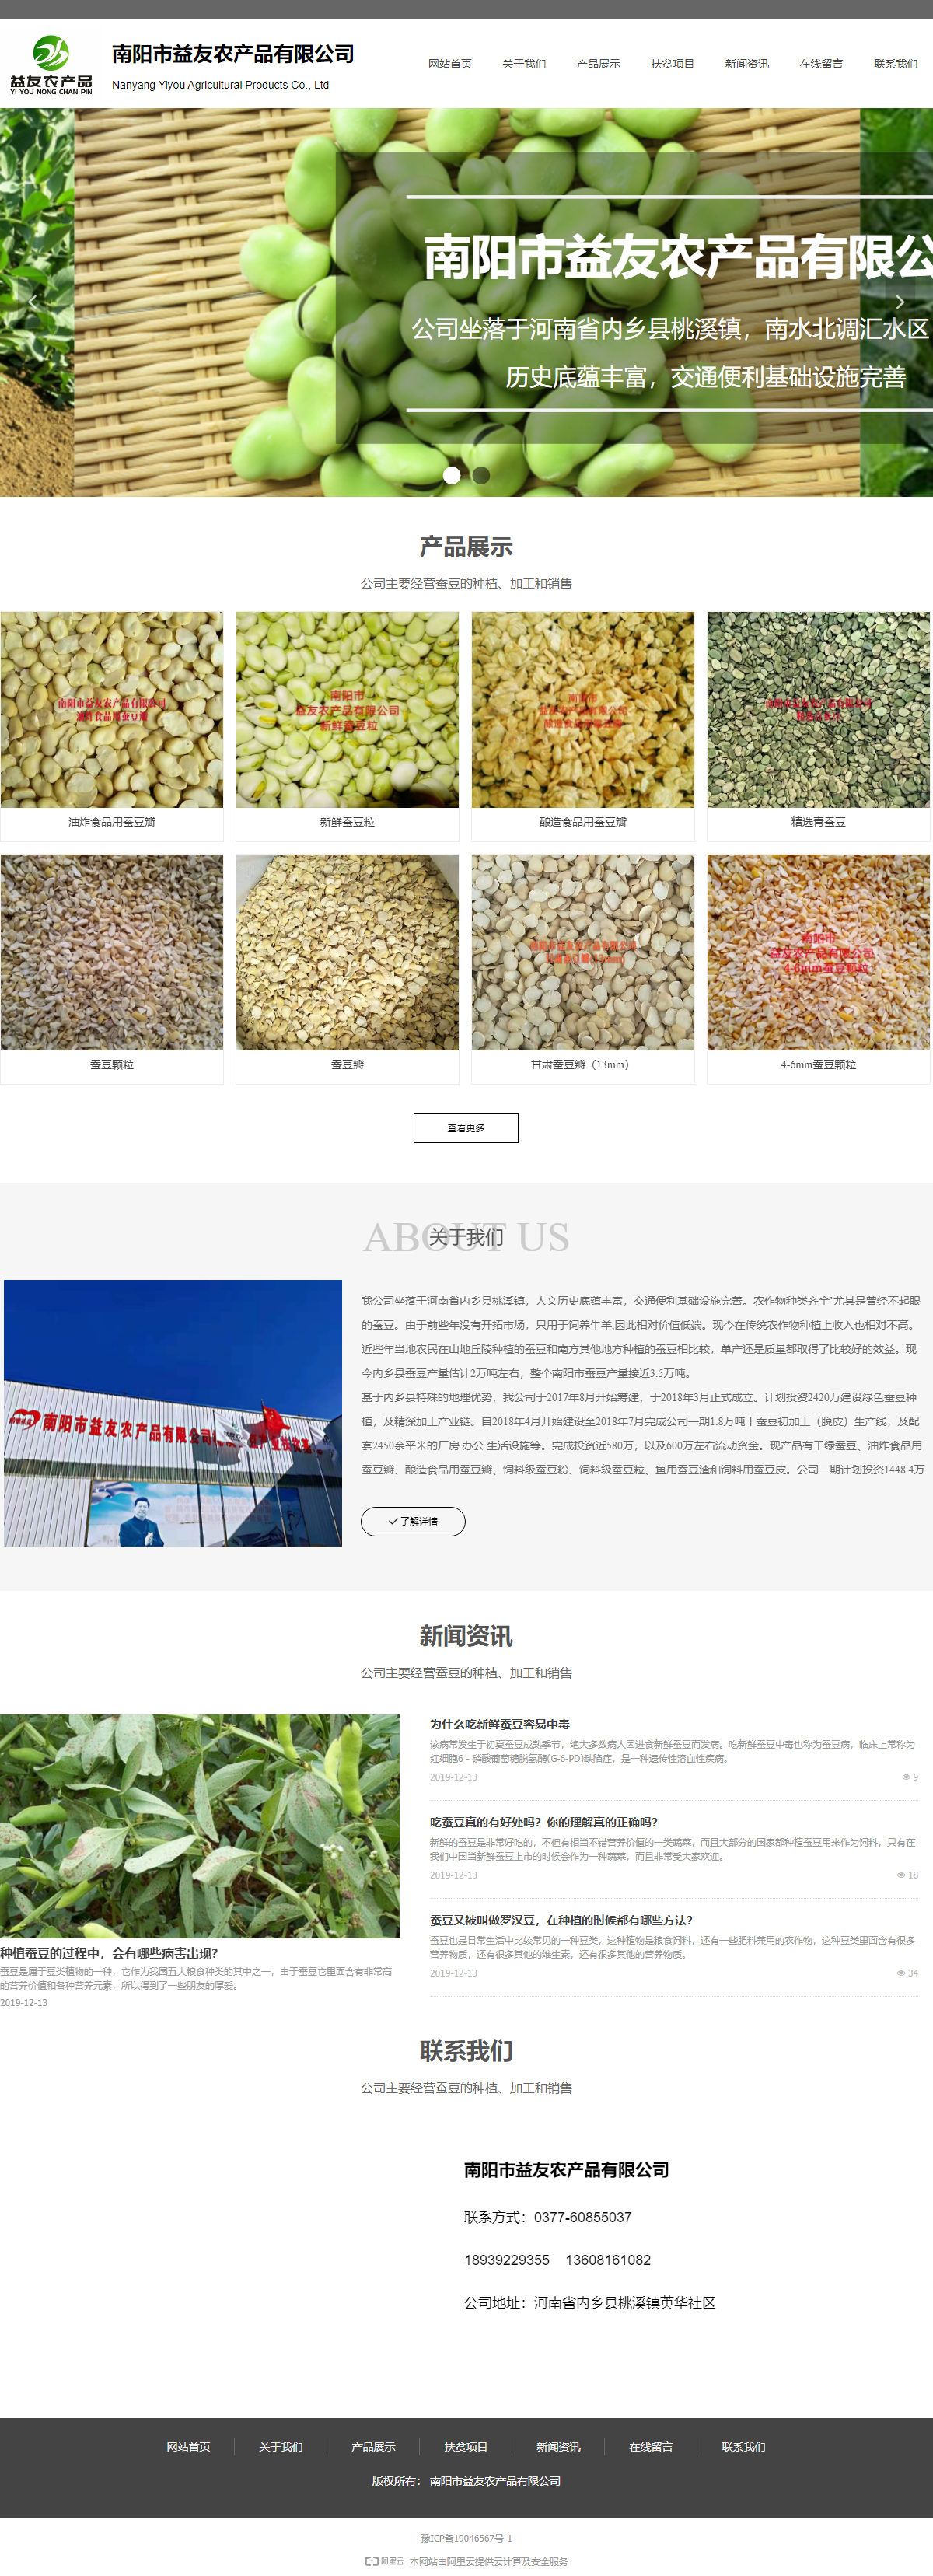 南阳市益友农产品有限公司网站案例